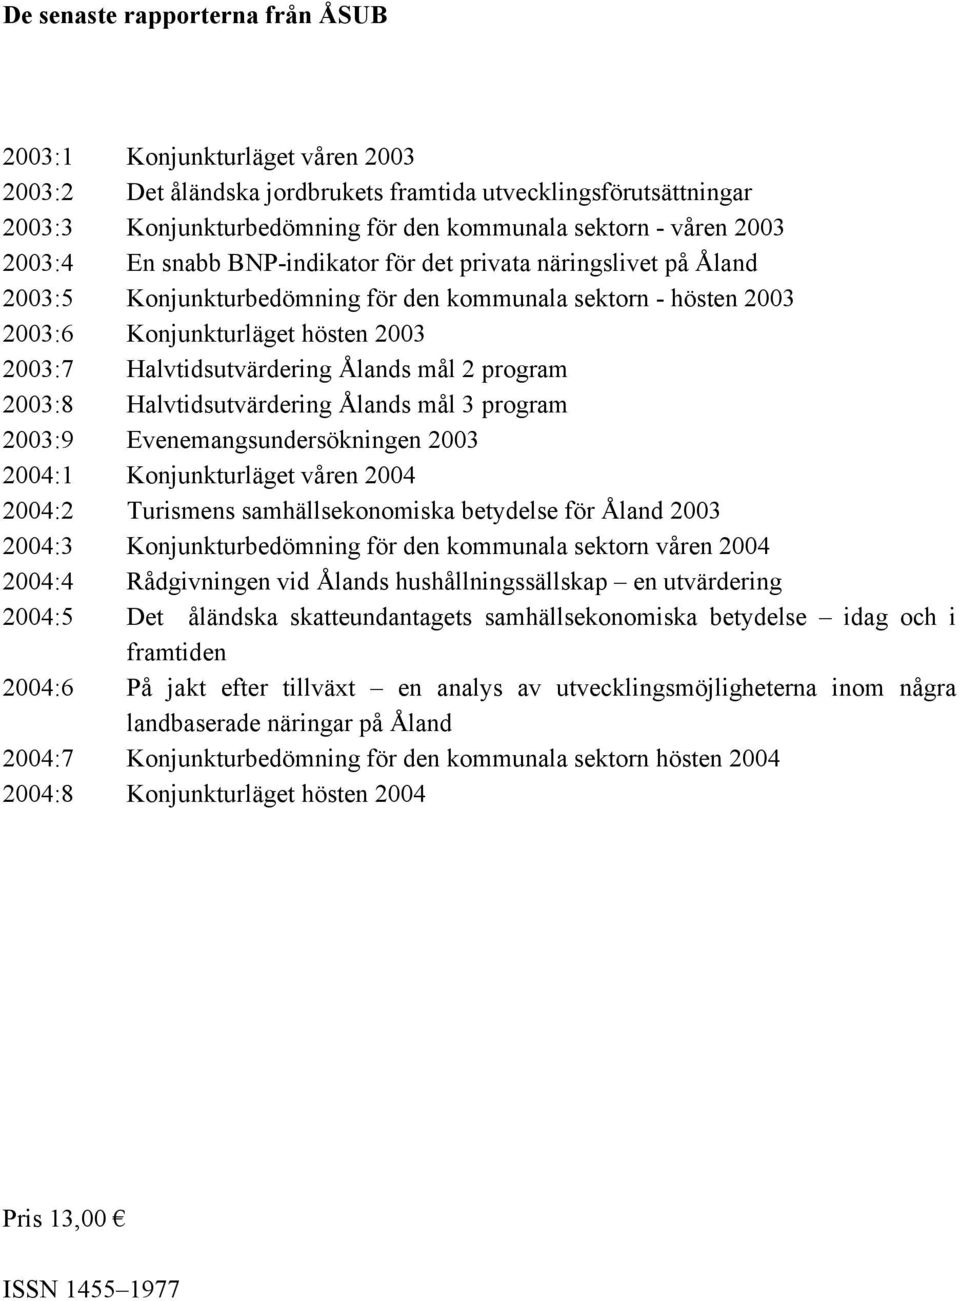 Halvtidsutvärdering Ålands mål 2 program 2003:8 Halvtidsutvärdering Ålands mål 3 program 2003:9 Evenemangsundersökningen 2003 2004:1 Konjunkturläget våren 2004 2004:2 Turismens samhällsekonomiska